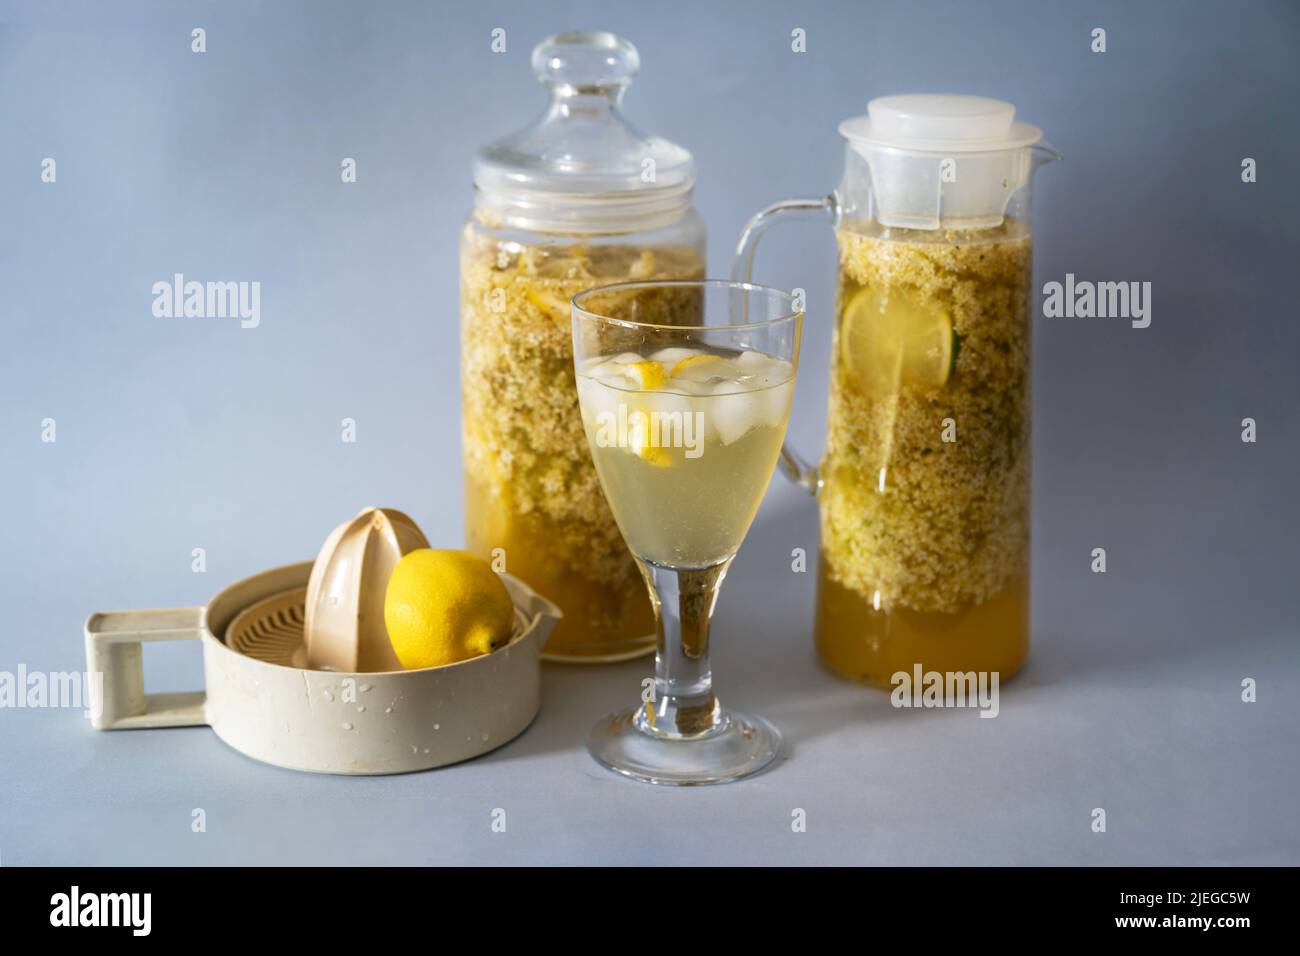 Préparation de la citrup de sureau, lixiviation de la fleur de sureau en deux verres, boisson et presse-agrumes sur fond gris. Banque D'Images